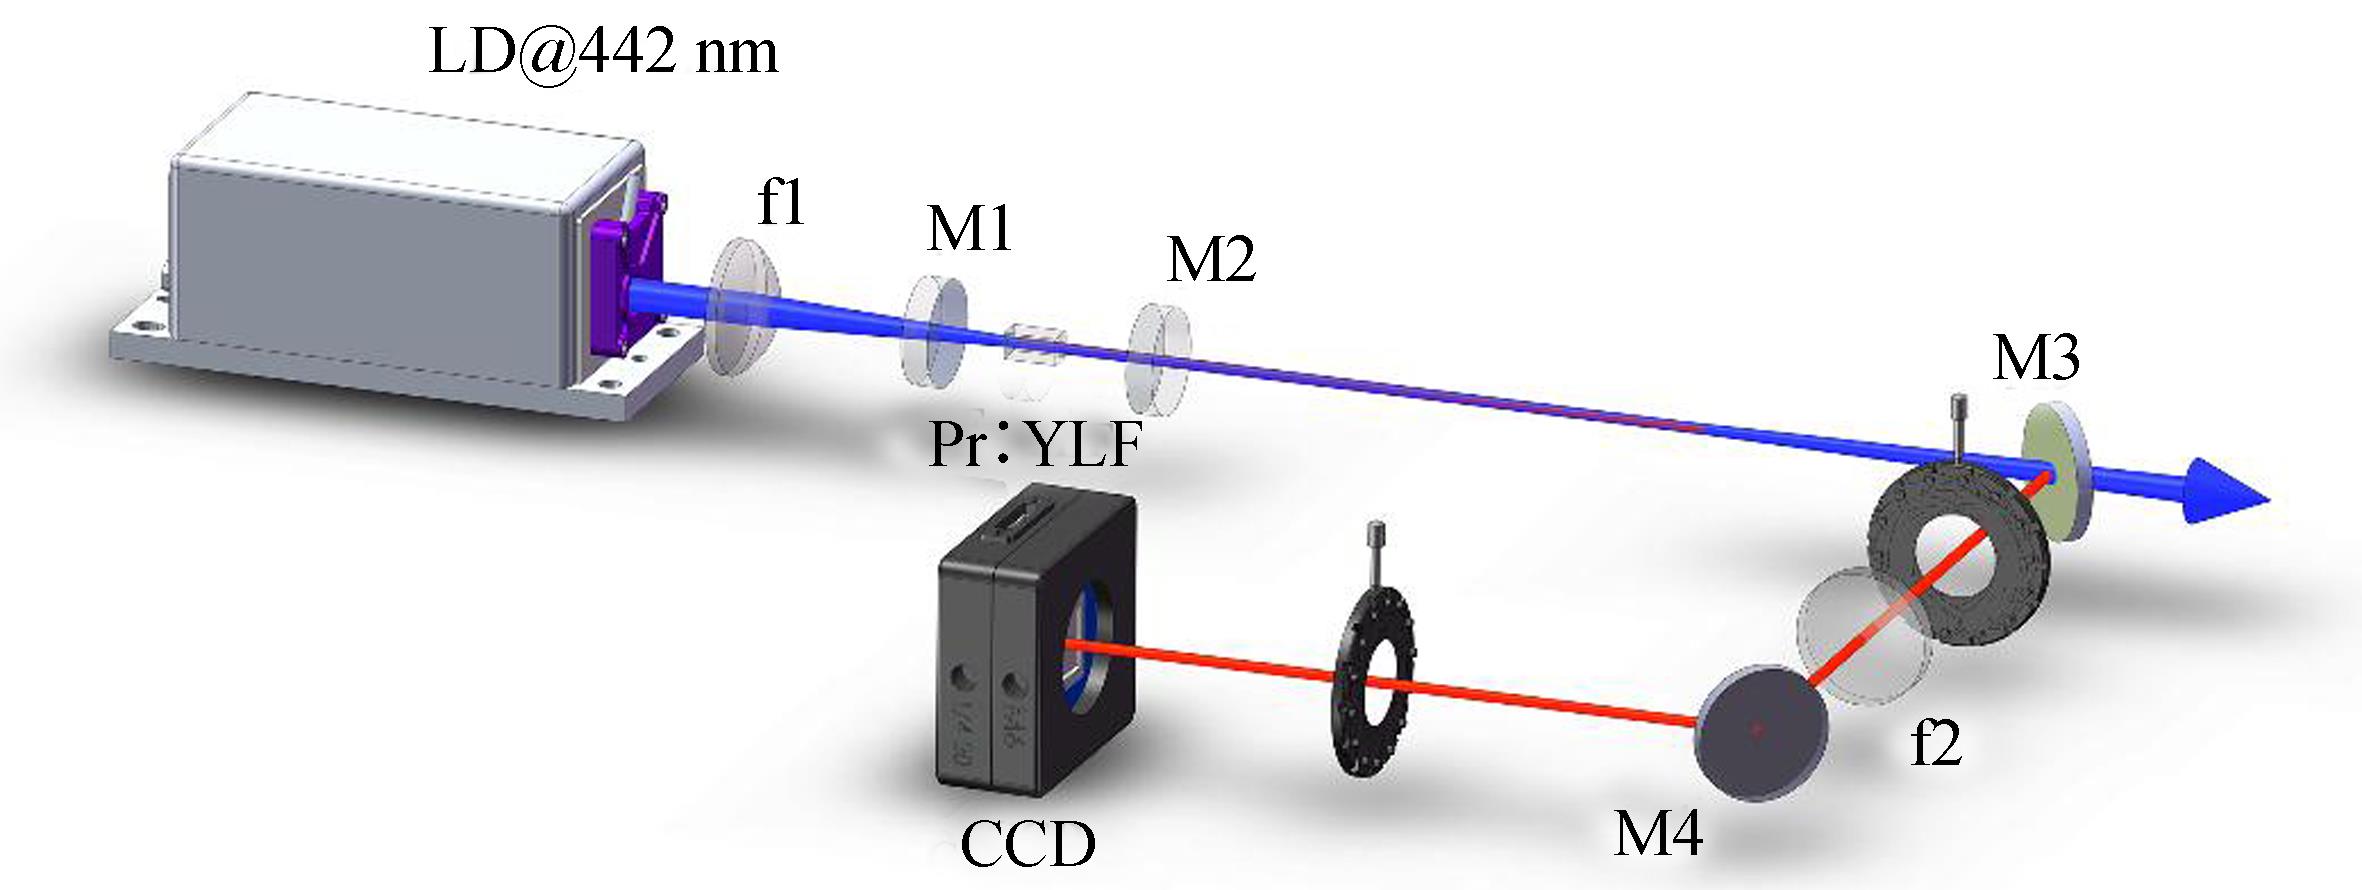 Experimental setup of blue laser diode pumped Pr:YLF laser